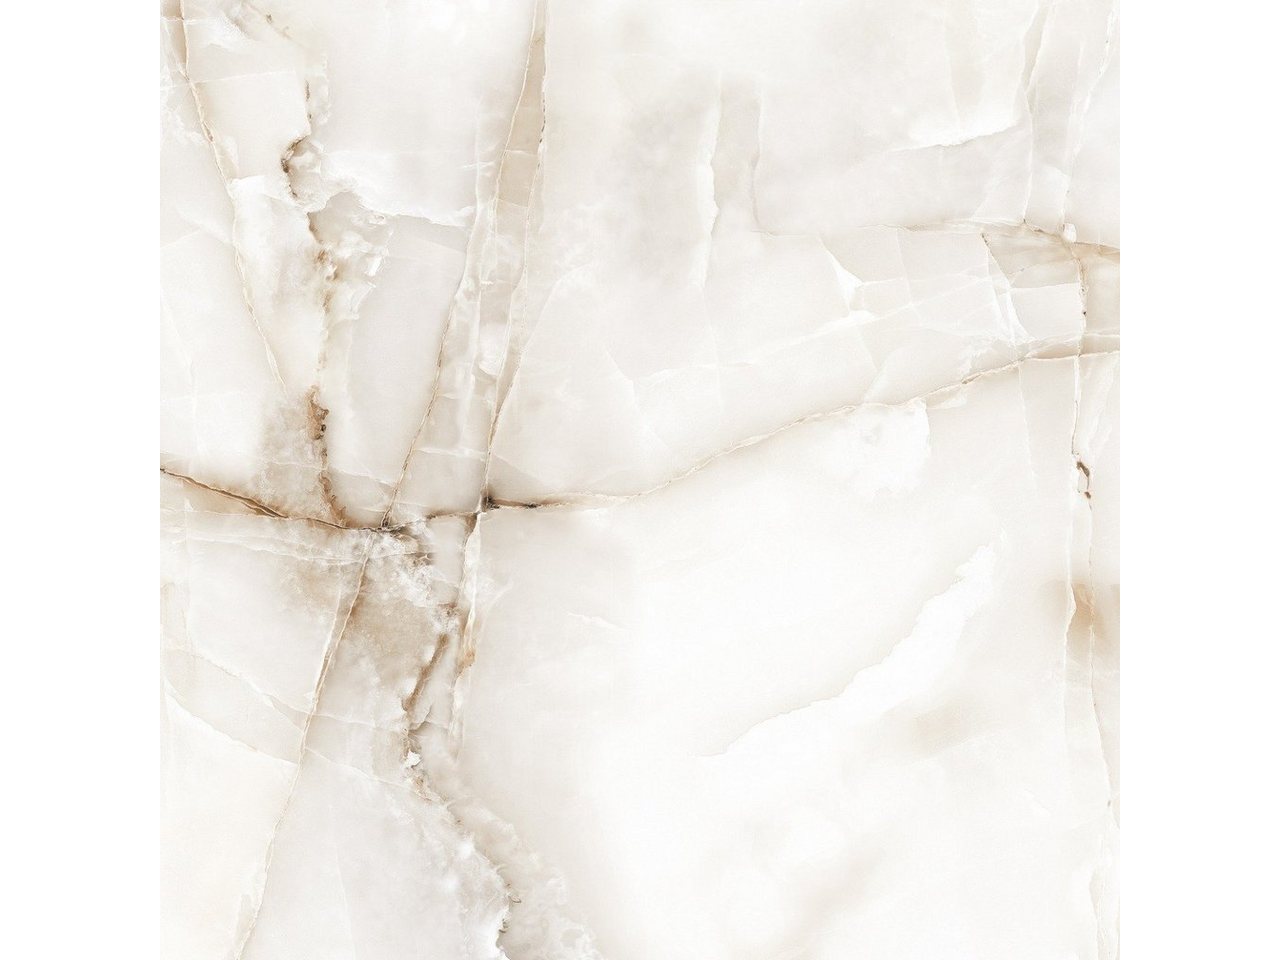 Wandfliese 1 Paket (1,44 m2) Fliesen ONYX SAND (60 × 60 cm), poliert, beige, Küche Wand Bad Flur Wandverkleidung Marmoroptik Steinoptik creme beige von OTTO